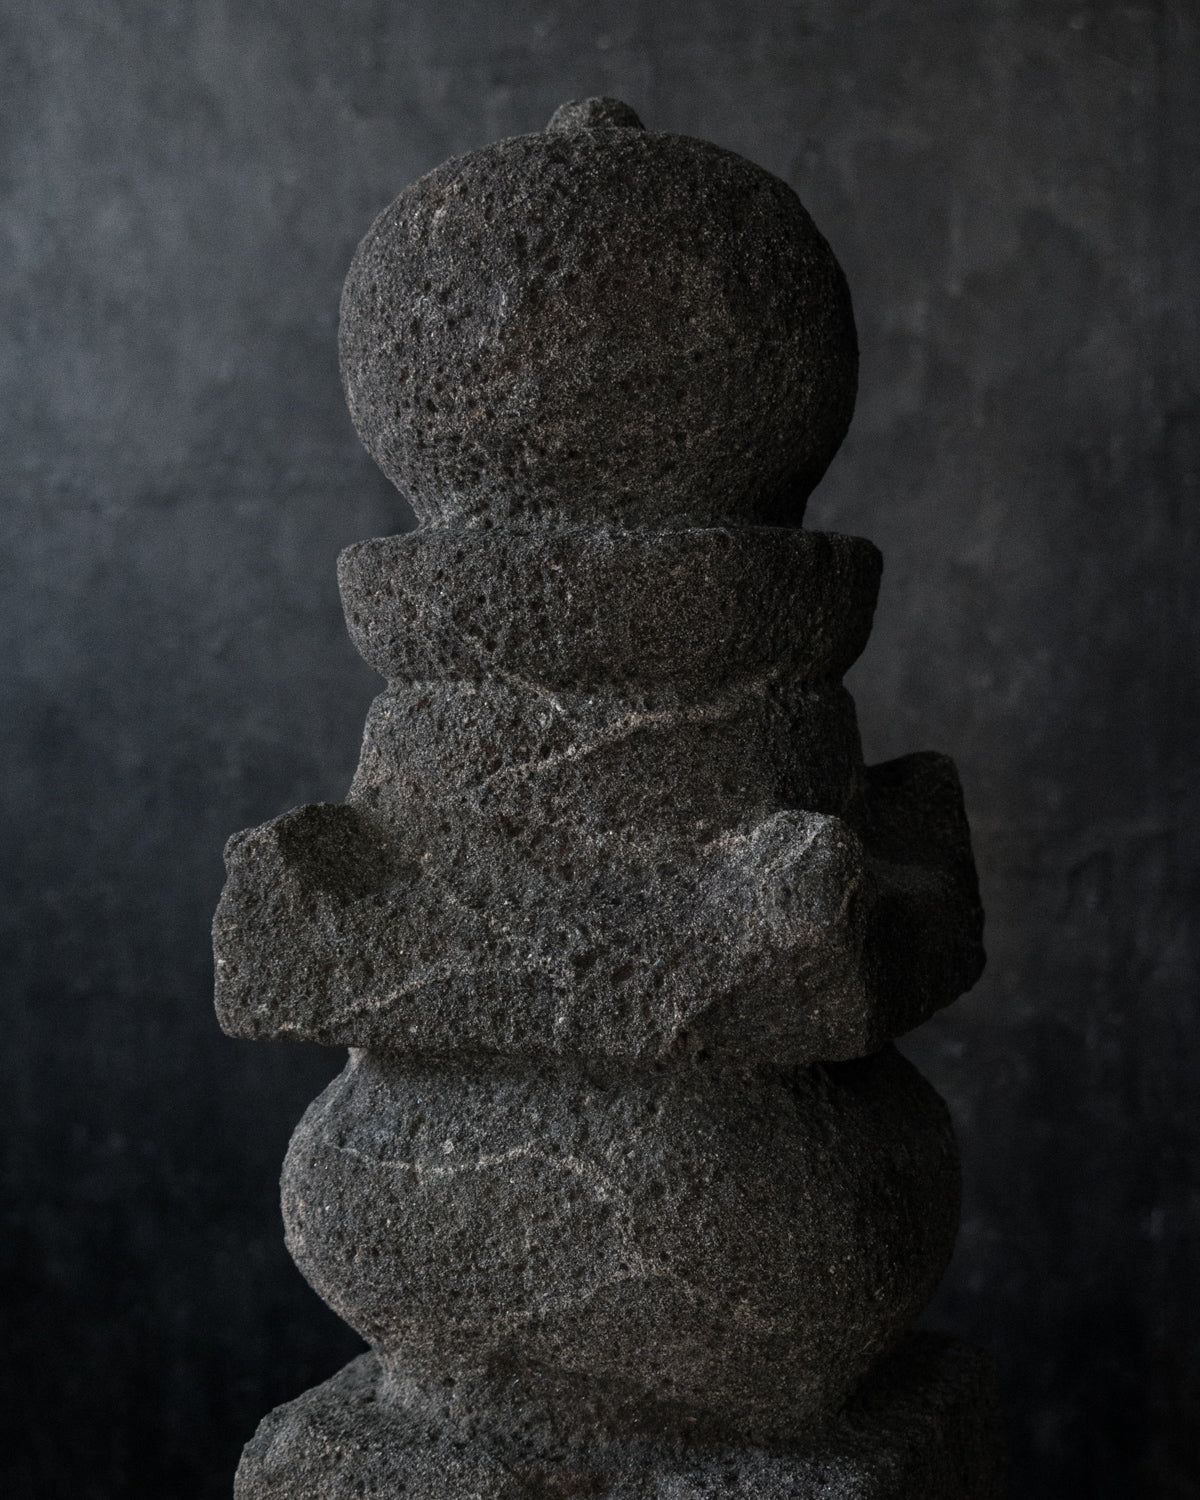 一石五輪塔 Gorinto Stone Sculpture